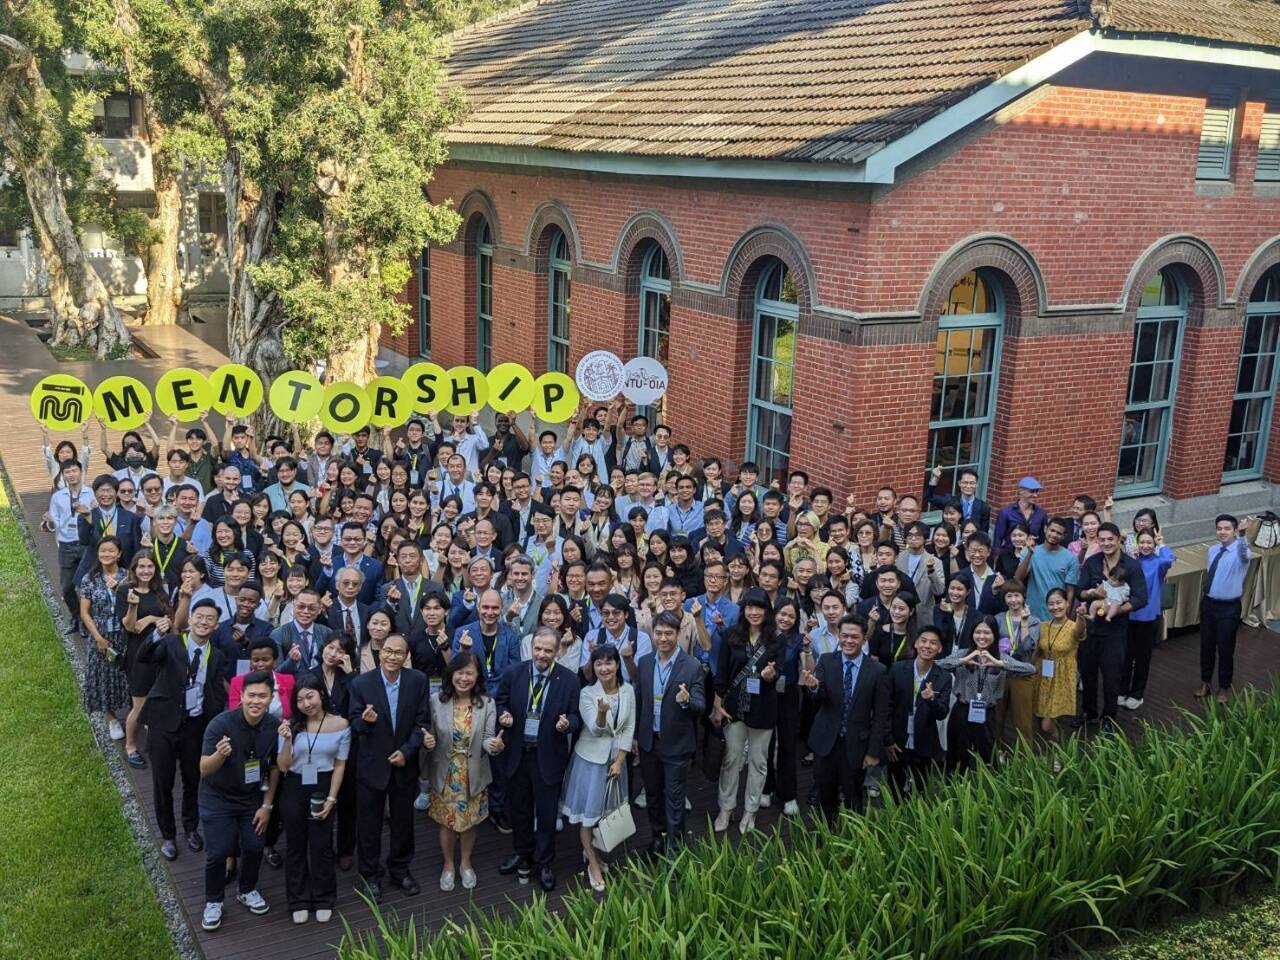 Đại học Quốc gia Đài Loan đã tổ chức tiệc tri ân vào ngày 11/9, mời đại diện các cơ sở thực tập, những người giám sát thực tập và thực tập sinh cùng nhau trao đổi kinh nghiệm chia sẻ kinh nghiệm có được từ chương trình thực tập và những thành quả đạt được.